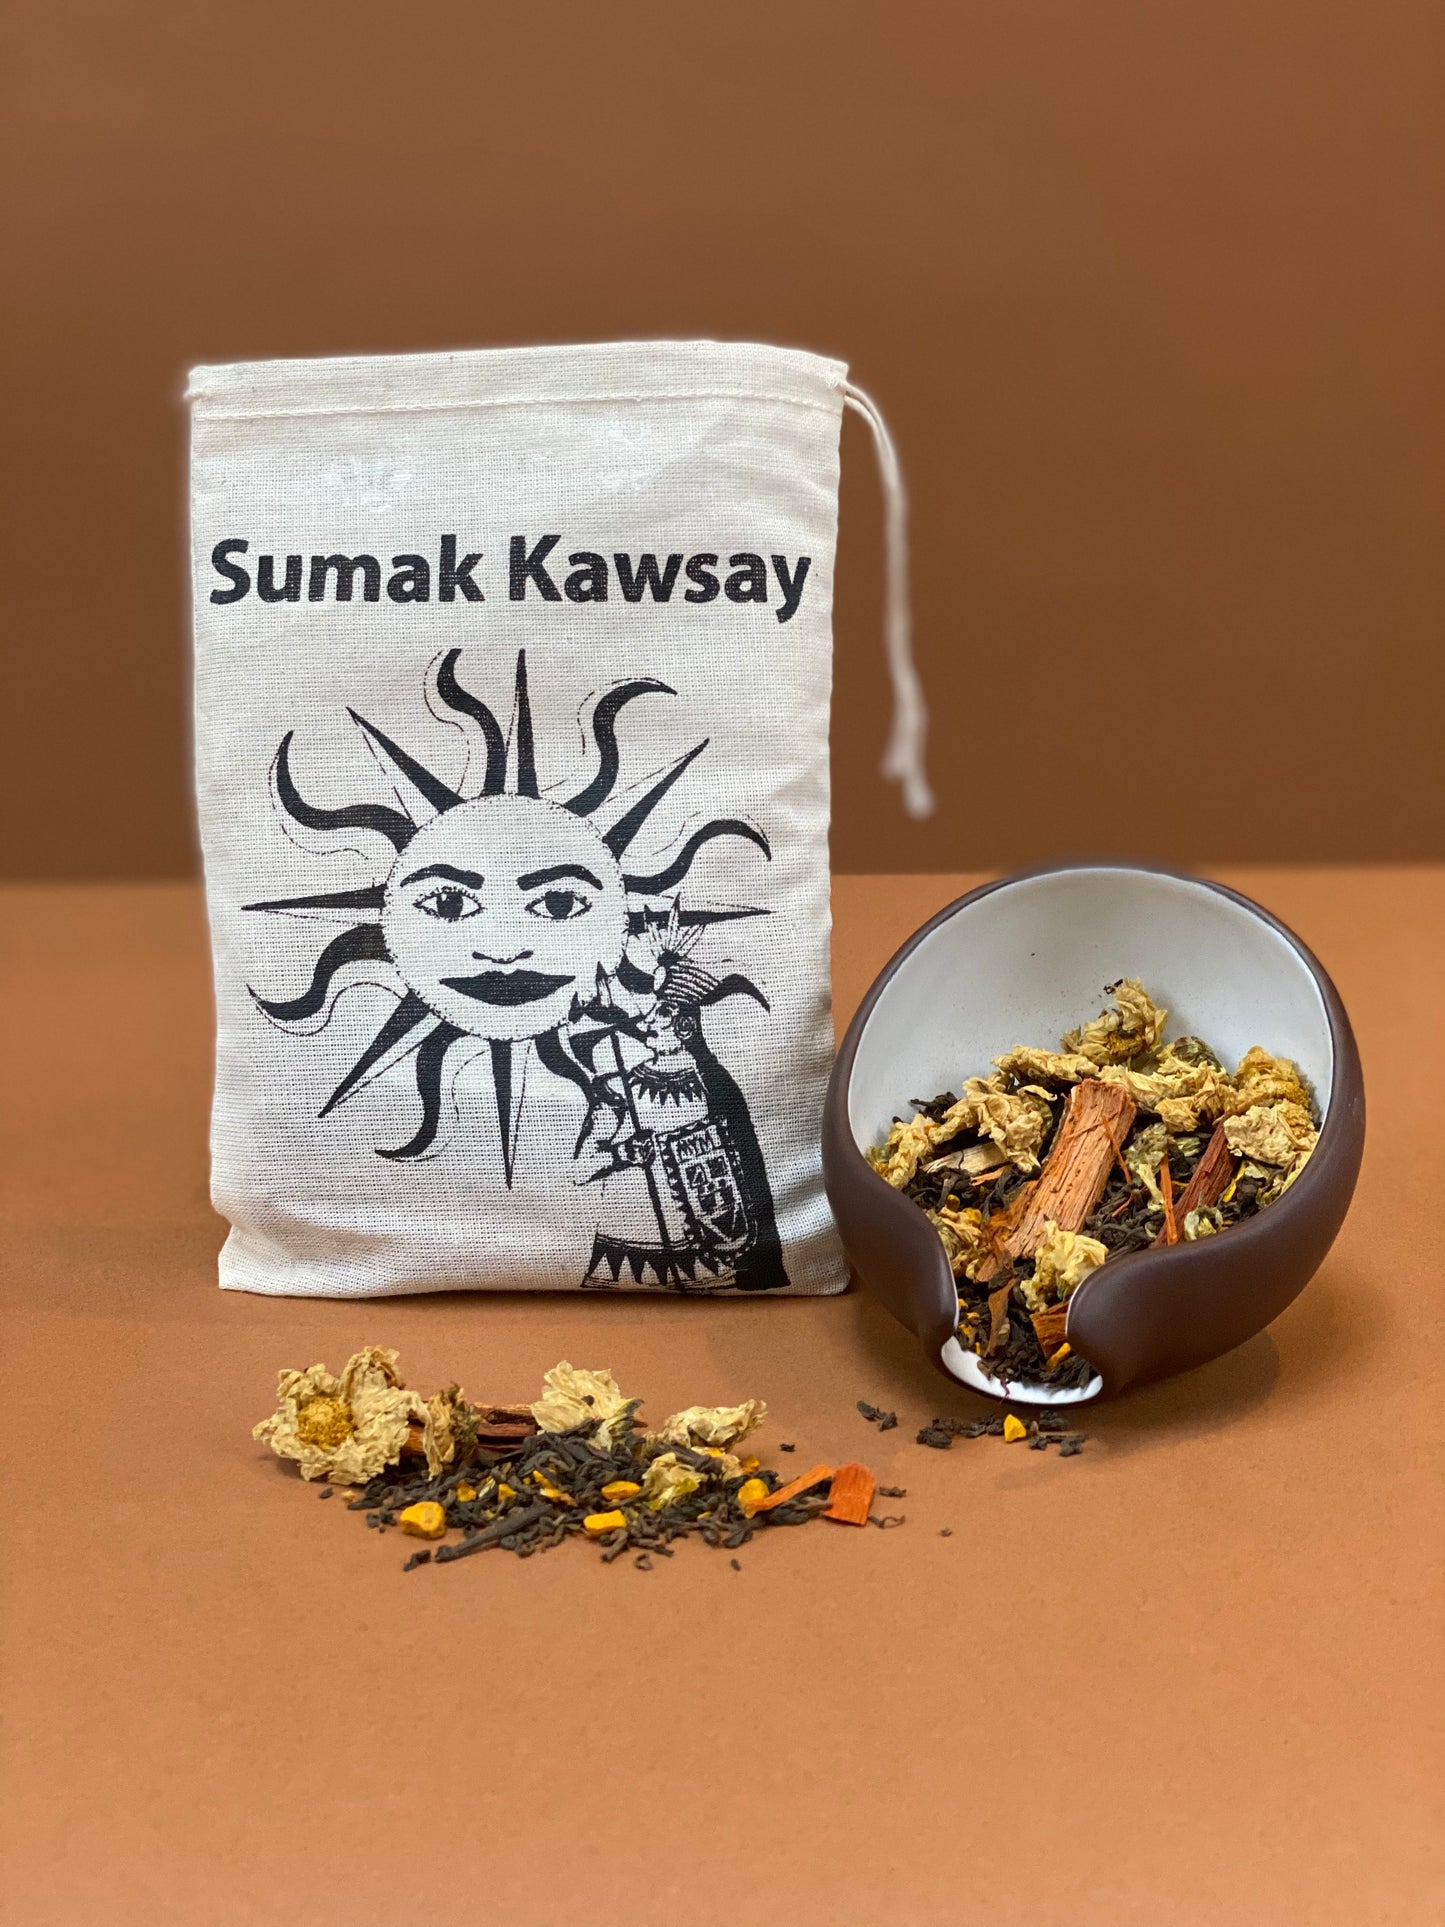 Sumak Kawsay